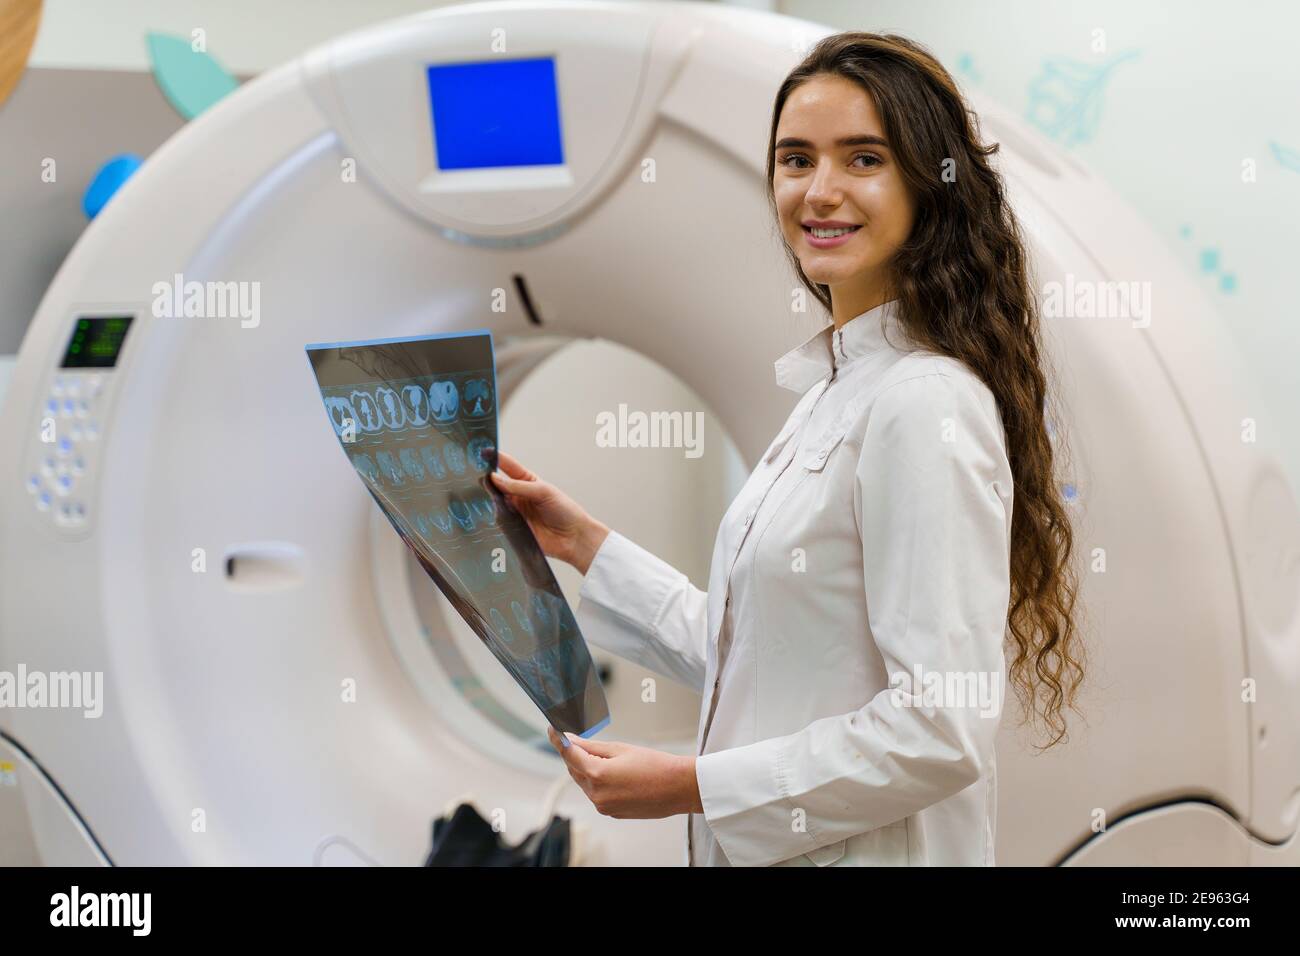 Lo studente medico guarda in macchina fotografica e sorride. Stand medici con immagine radiografica del cervello paziente nelle mani. La donna rimane di fronte a kt komputer tomogr Foto Stock